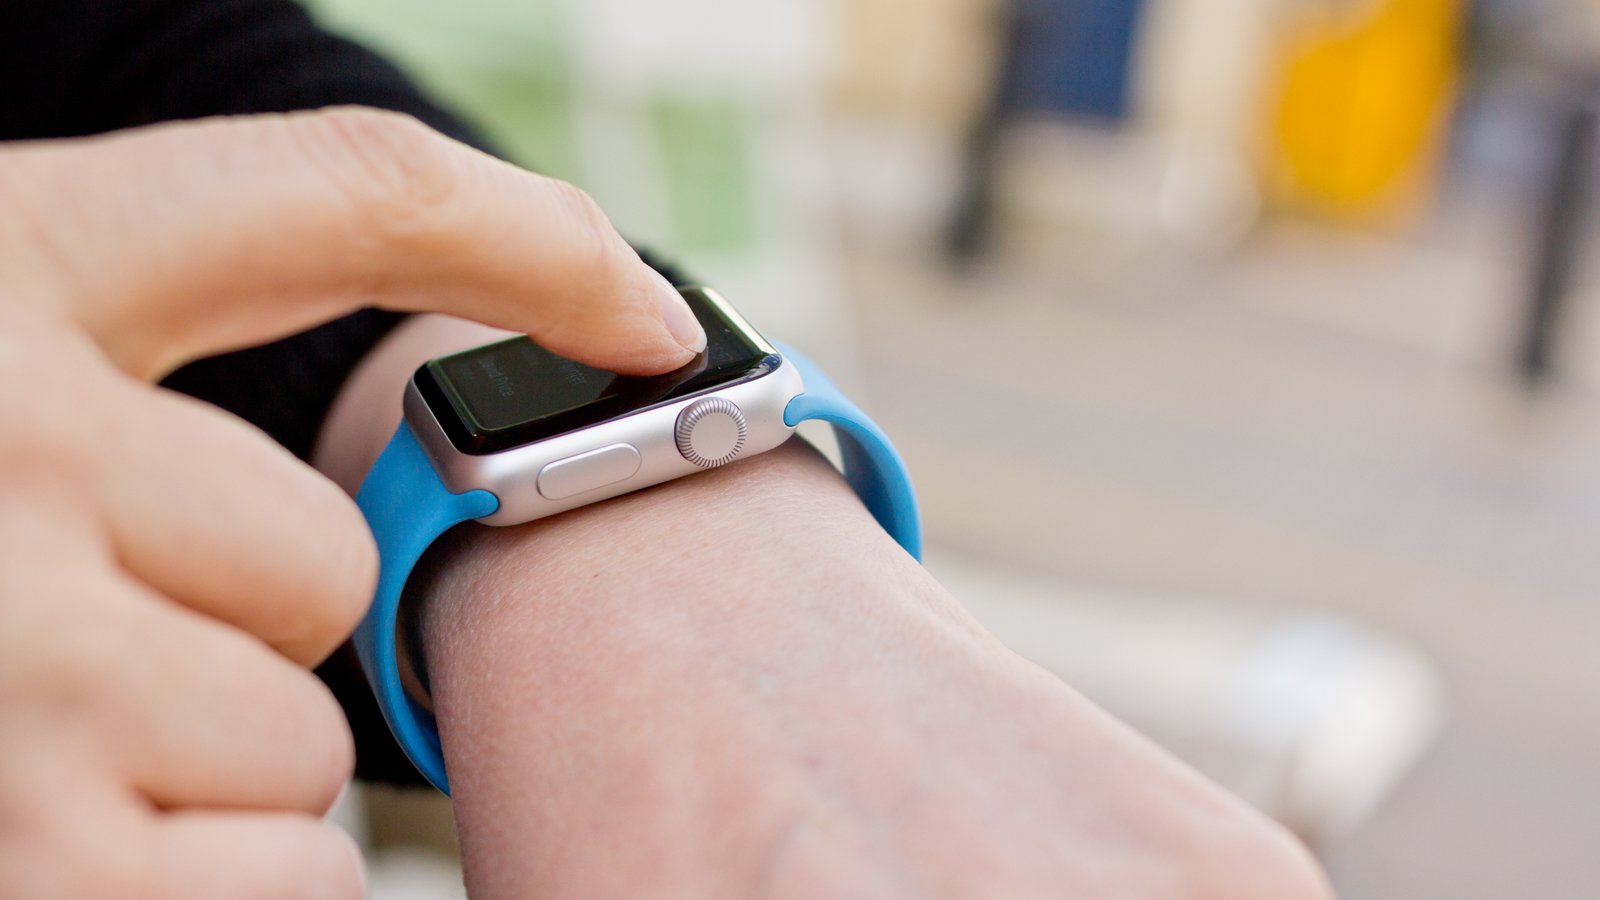 Apple патентует новую технологию тканевых экранов для Apple Watch